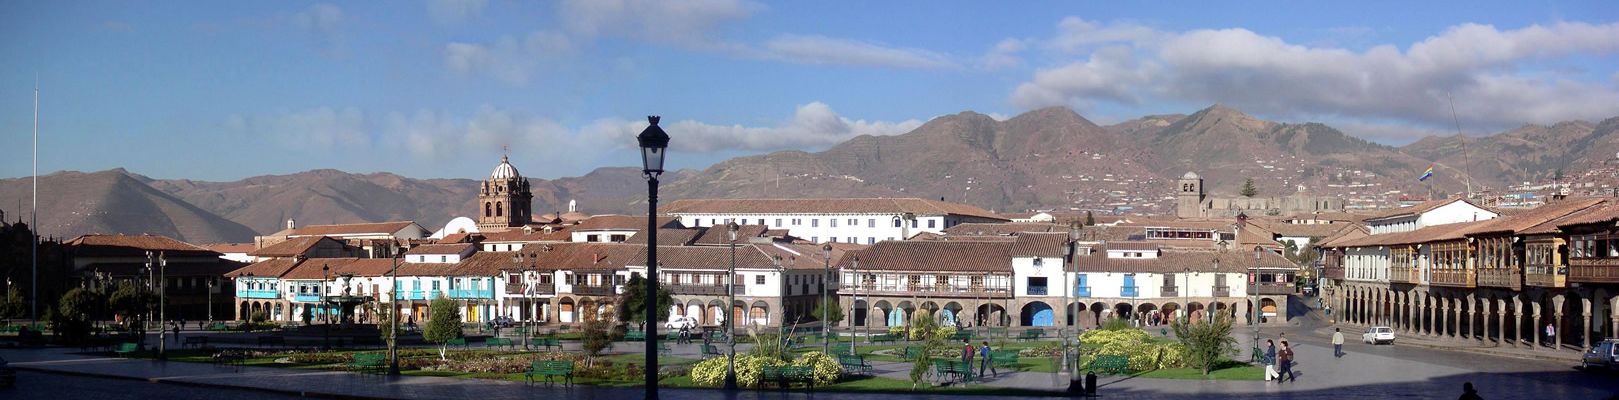 Cuzco - voyage au Pérou